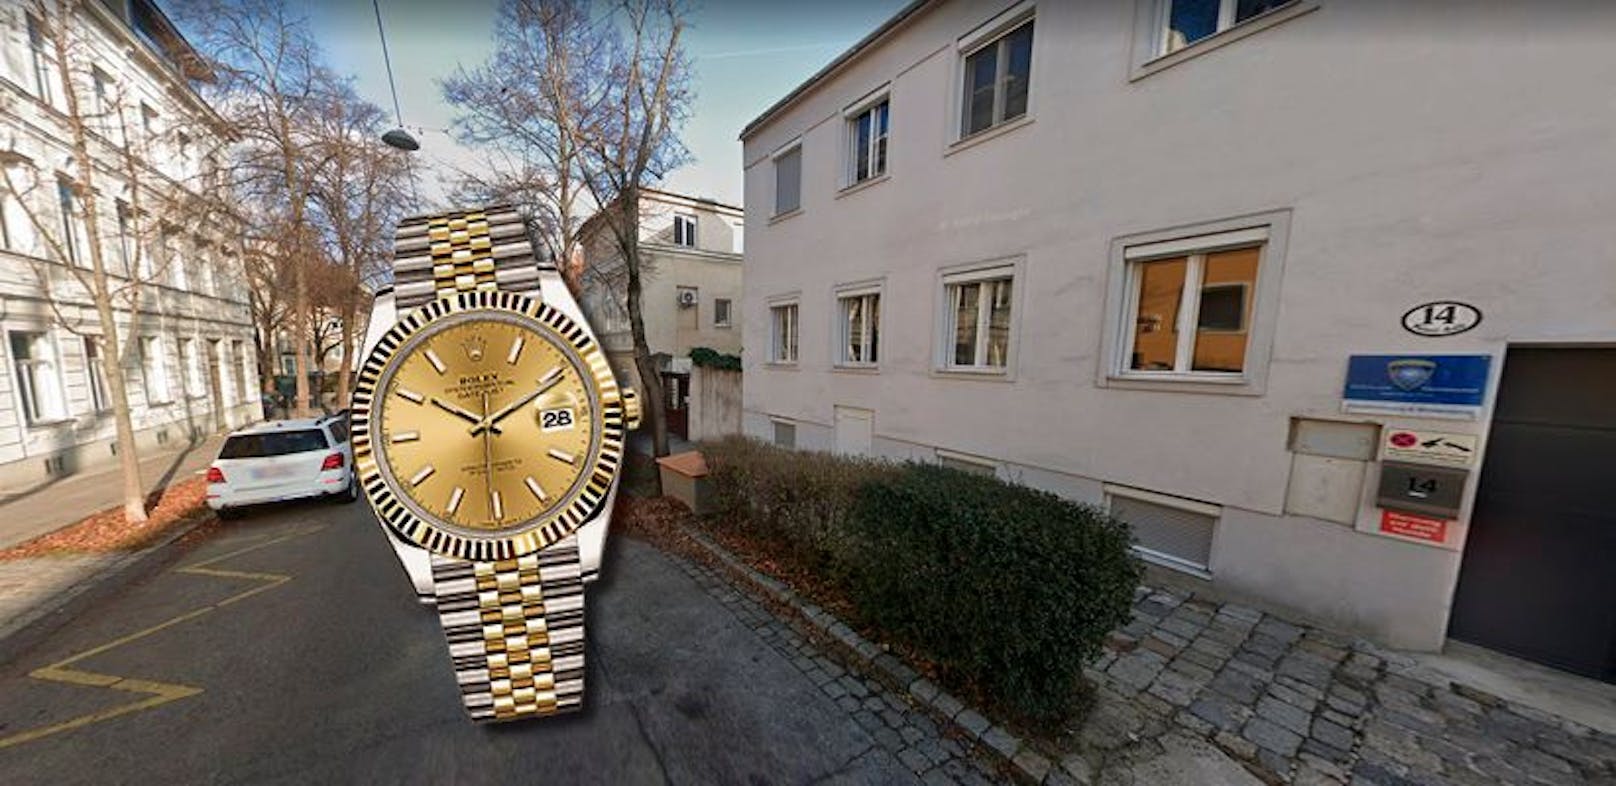 In der Salierigasse in Währing wurde ein Wiener am Samstagmittag beraubt. Eine Frau und ein Mann rissen ihm seine wertvolle Rolex vom Handgelenk.